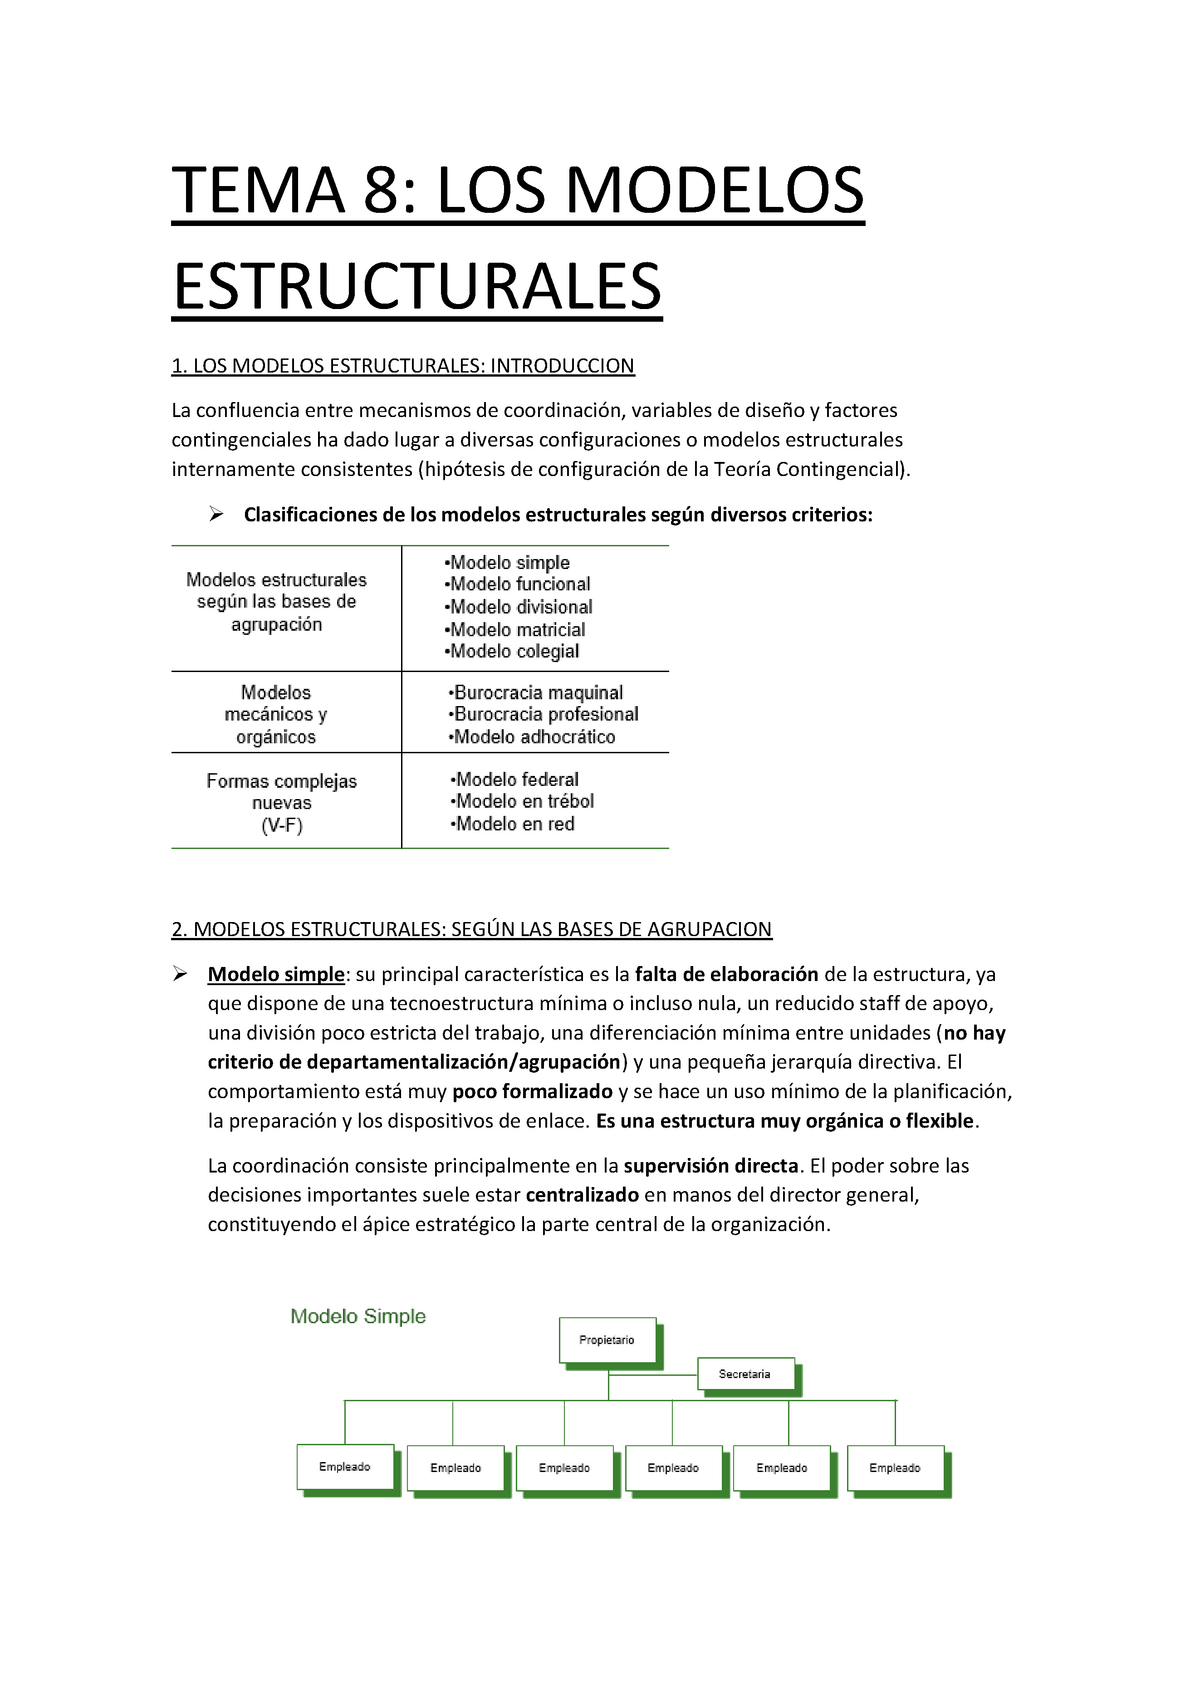 TEMA 8 - Apuntes 8 - TEMA 8: LOS MODELOS ESTRUCTURALES 1. LOS MODELOS  ESTRUCTURALES: INTRODUCCION La - Studocu